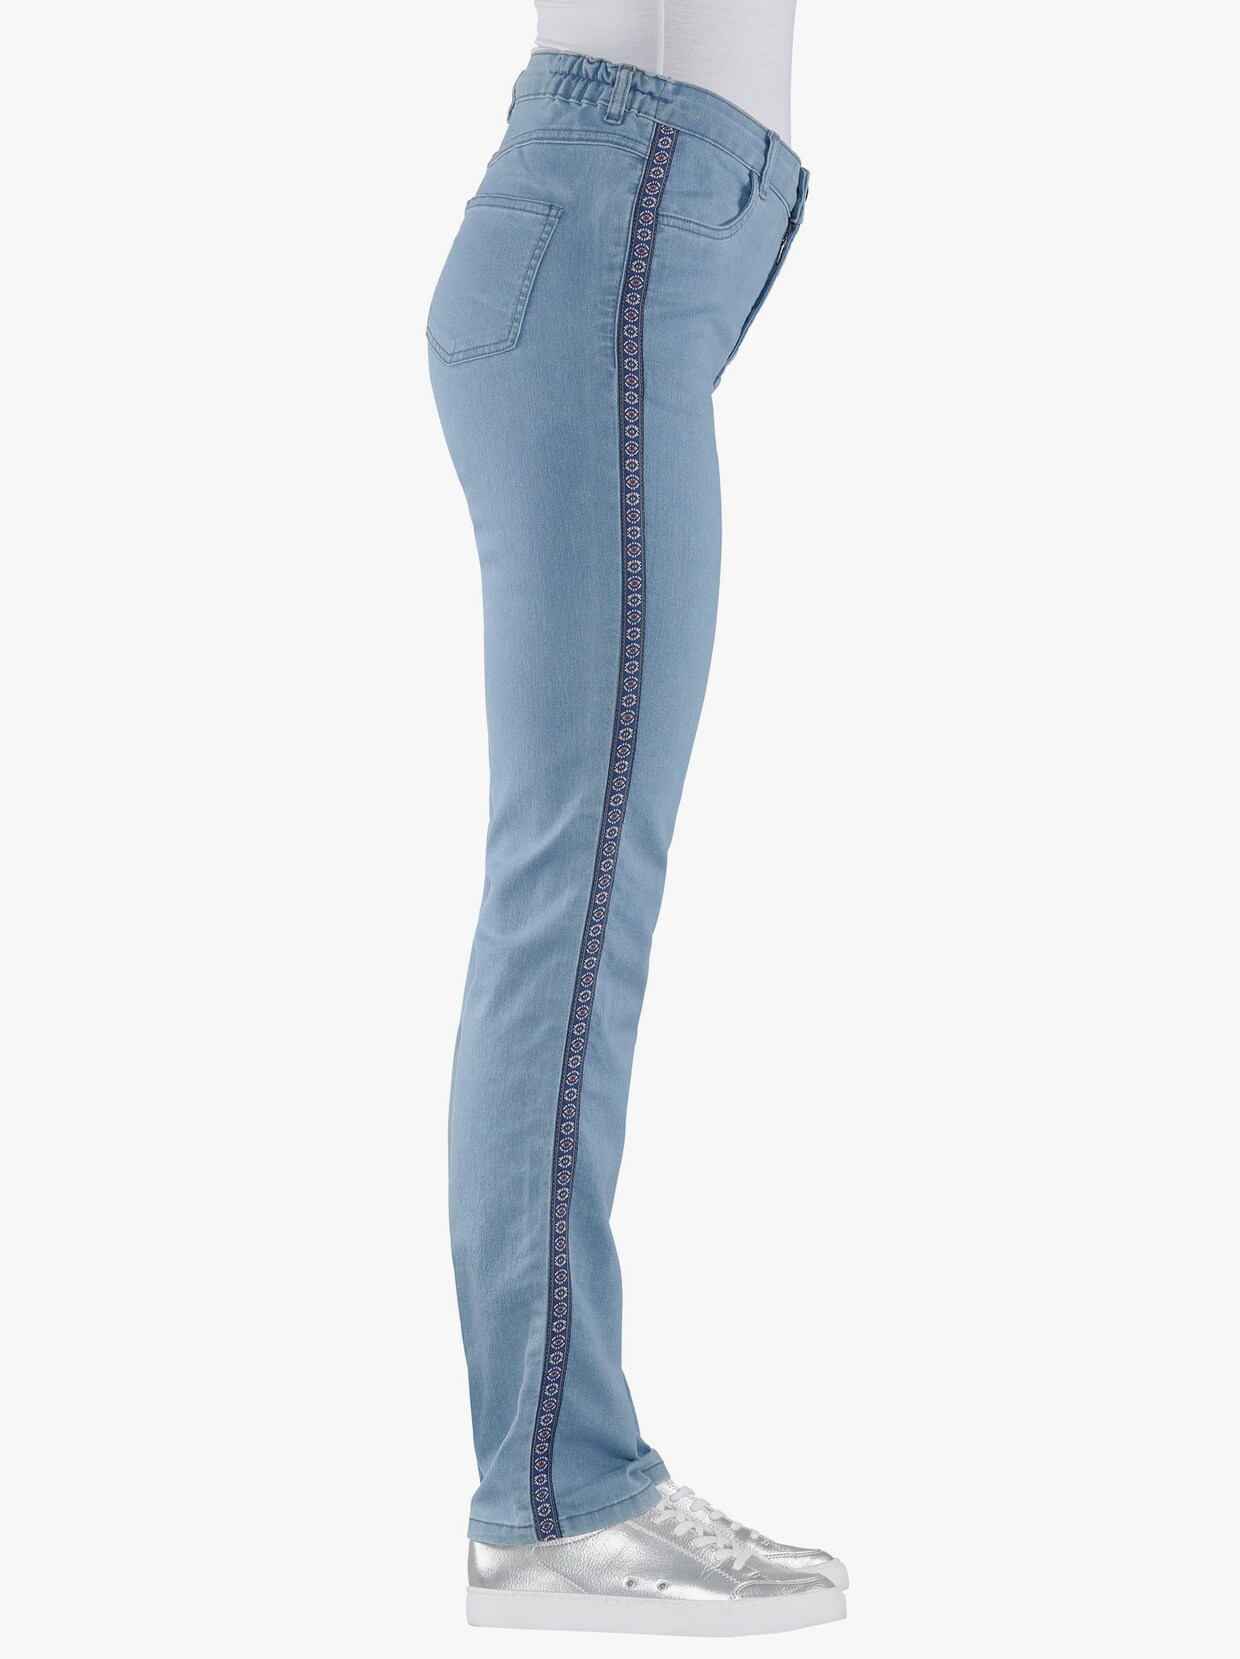 Strečové džíny - bělená modrá